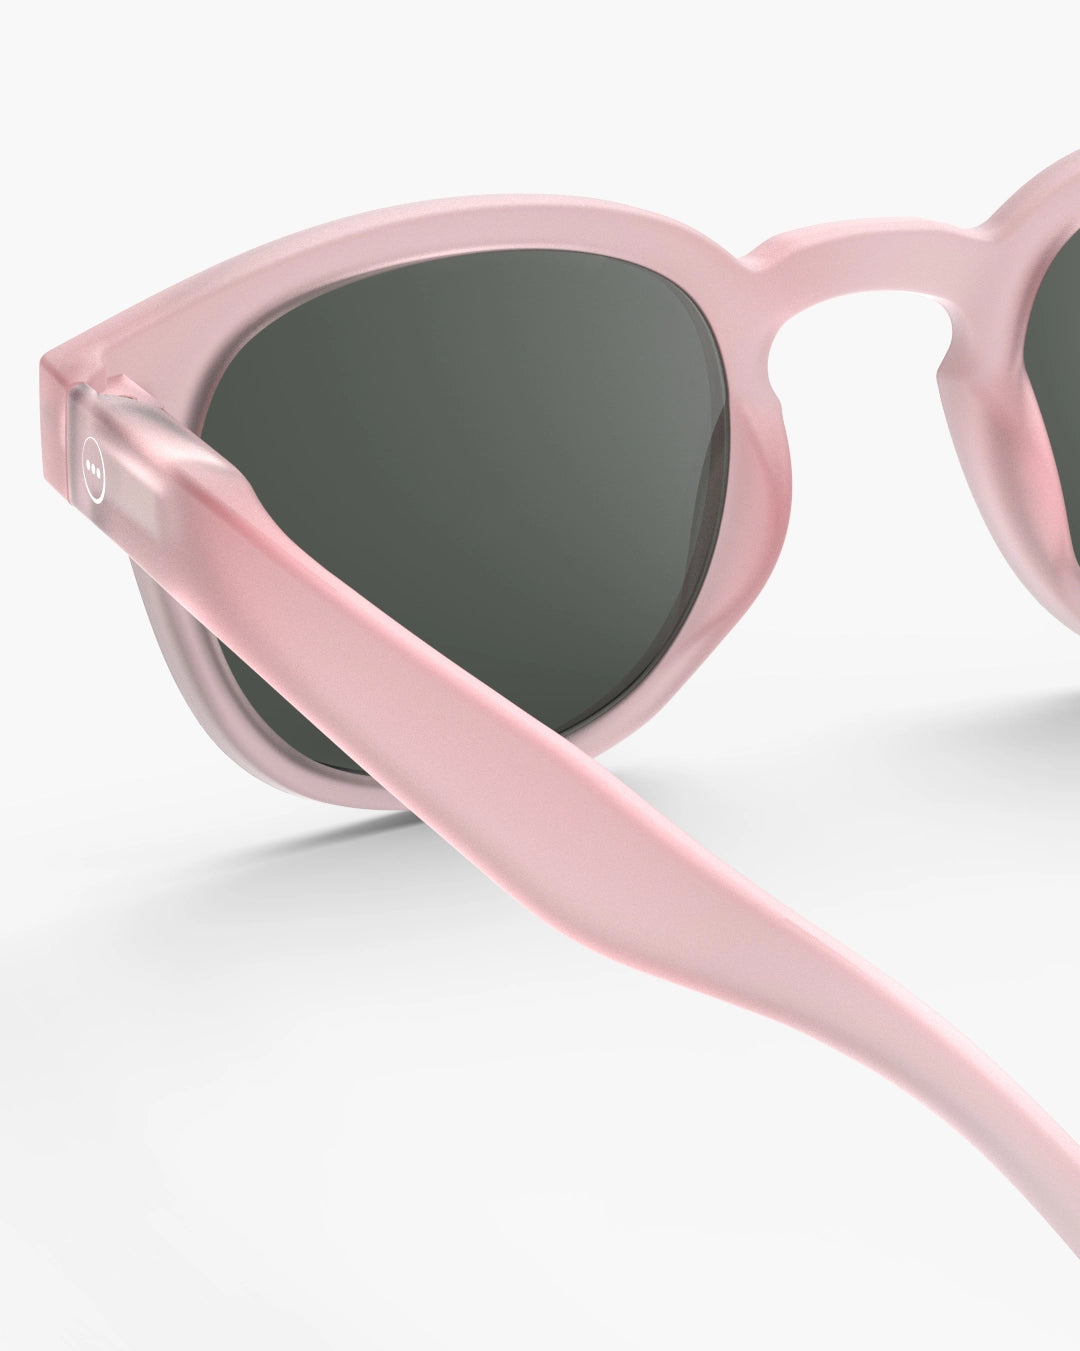 Izipizi Sun glasses #C Pink, 12 years+ and adults